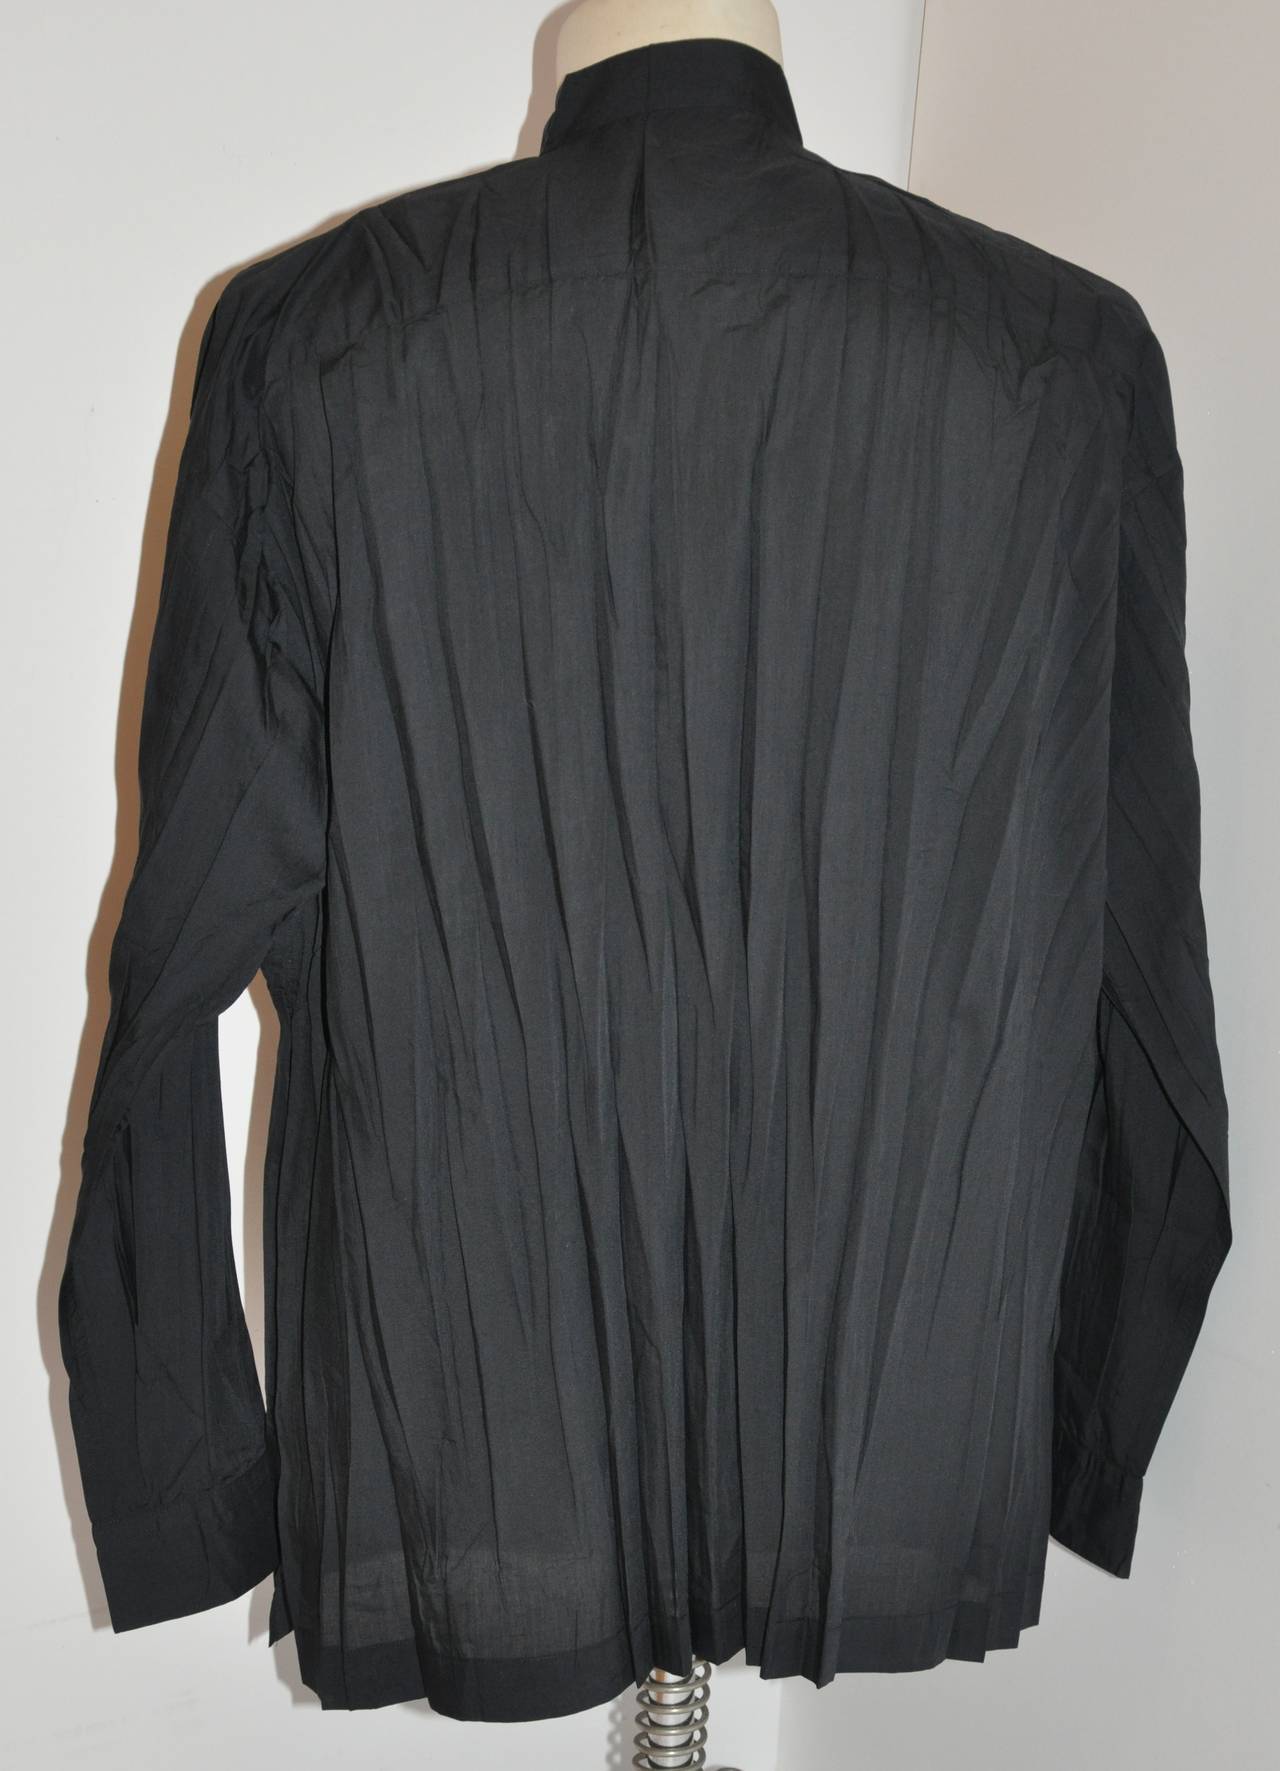 Dieses wunderbar bequeme Issey Miyake Hemd für Herren ist mit sieben (7) Perlmuttknöpfen auf der Vorderseite des Hemdes sowie an den Ärmelmanschetten und der vorderen Brusttasche verziert. Das Hemd hat auch zwei Seitenschlitze, die 4 1/8